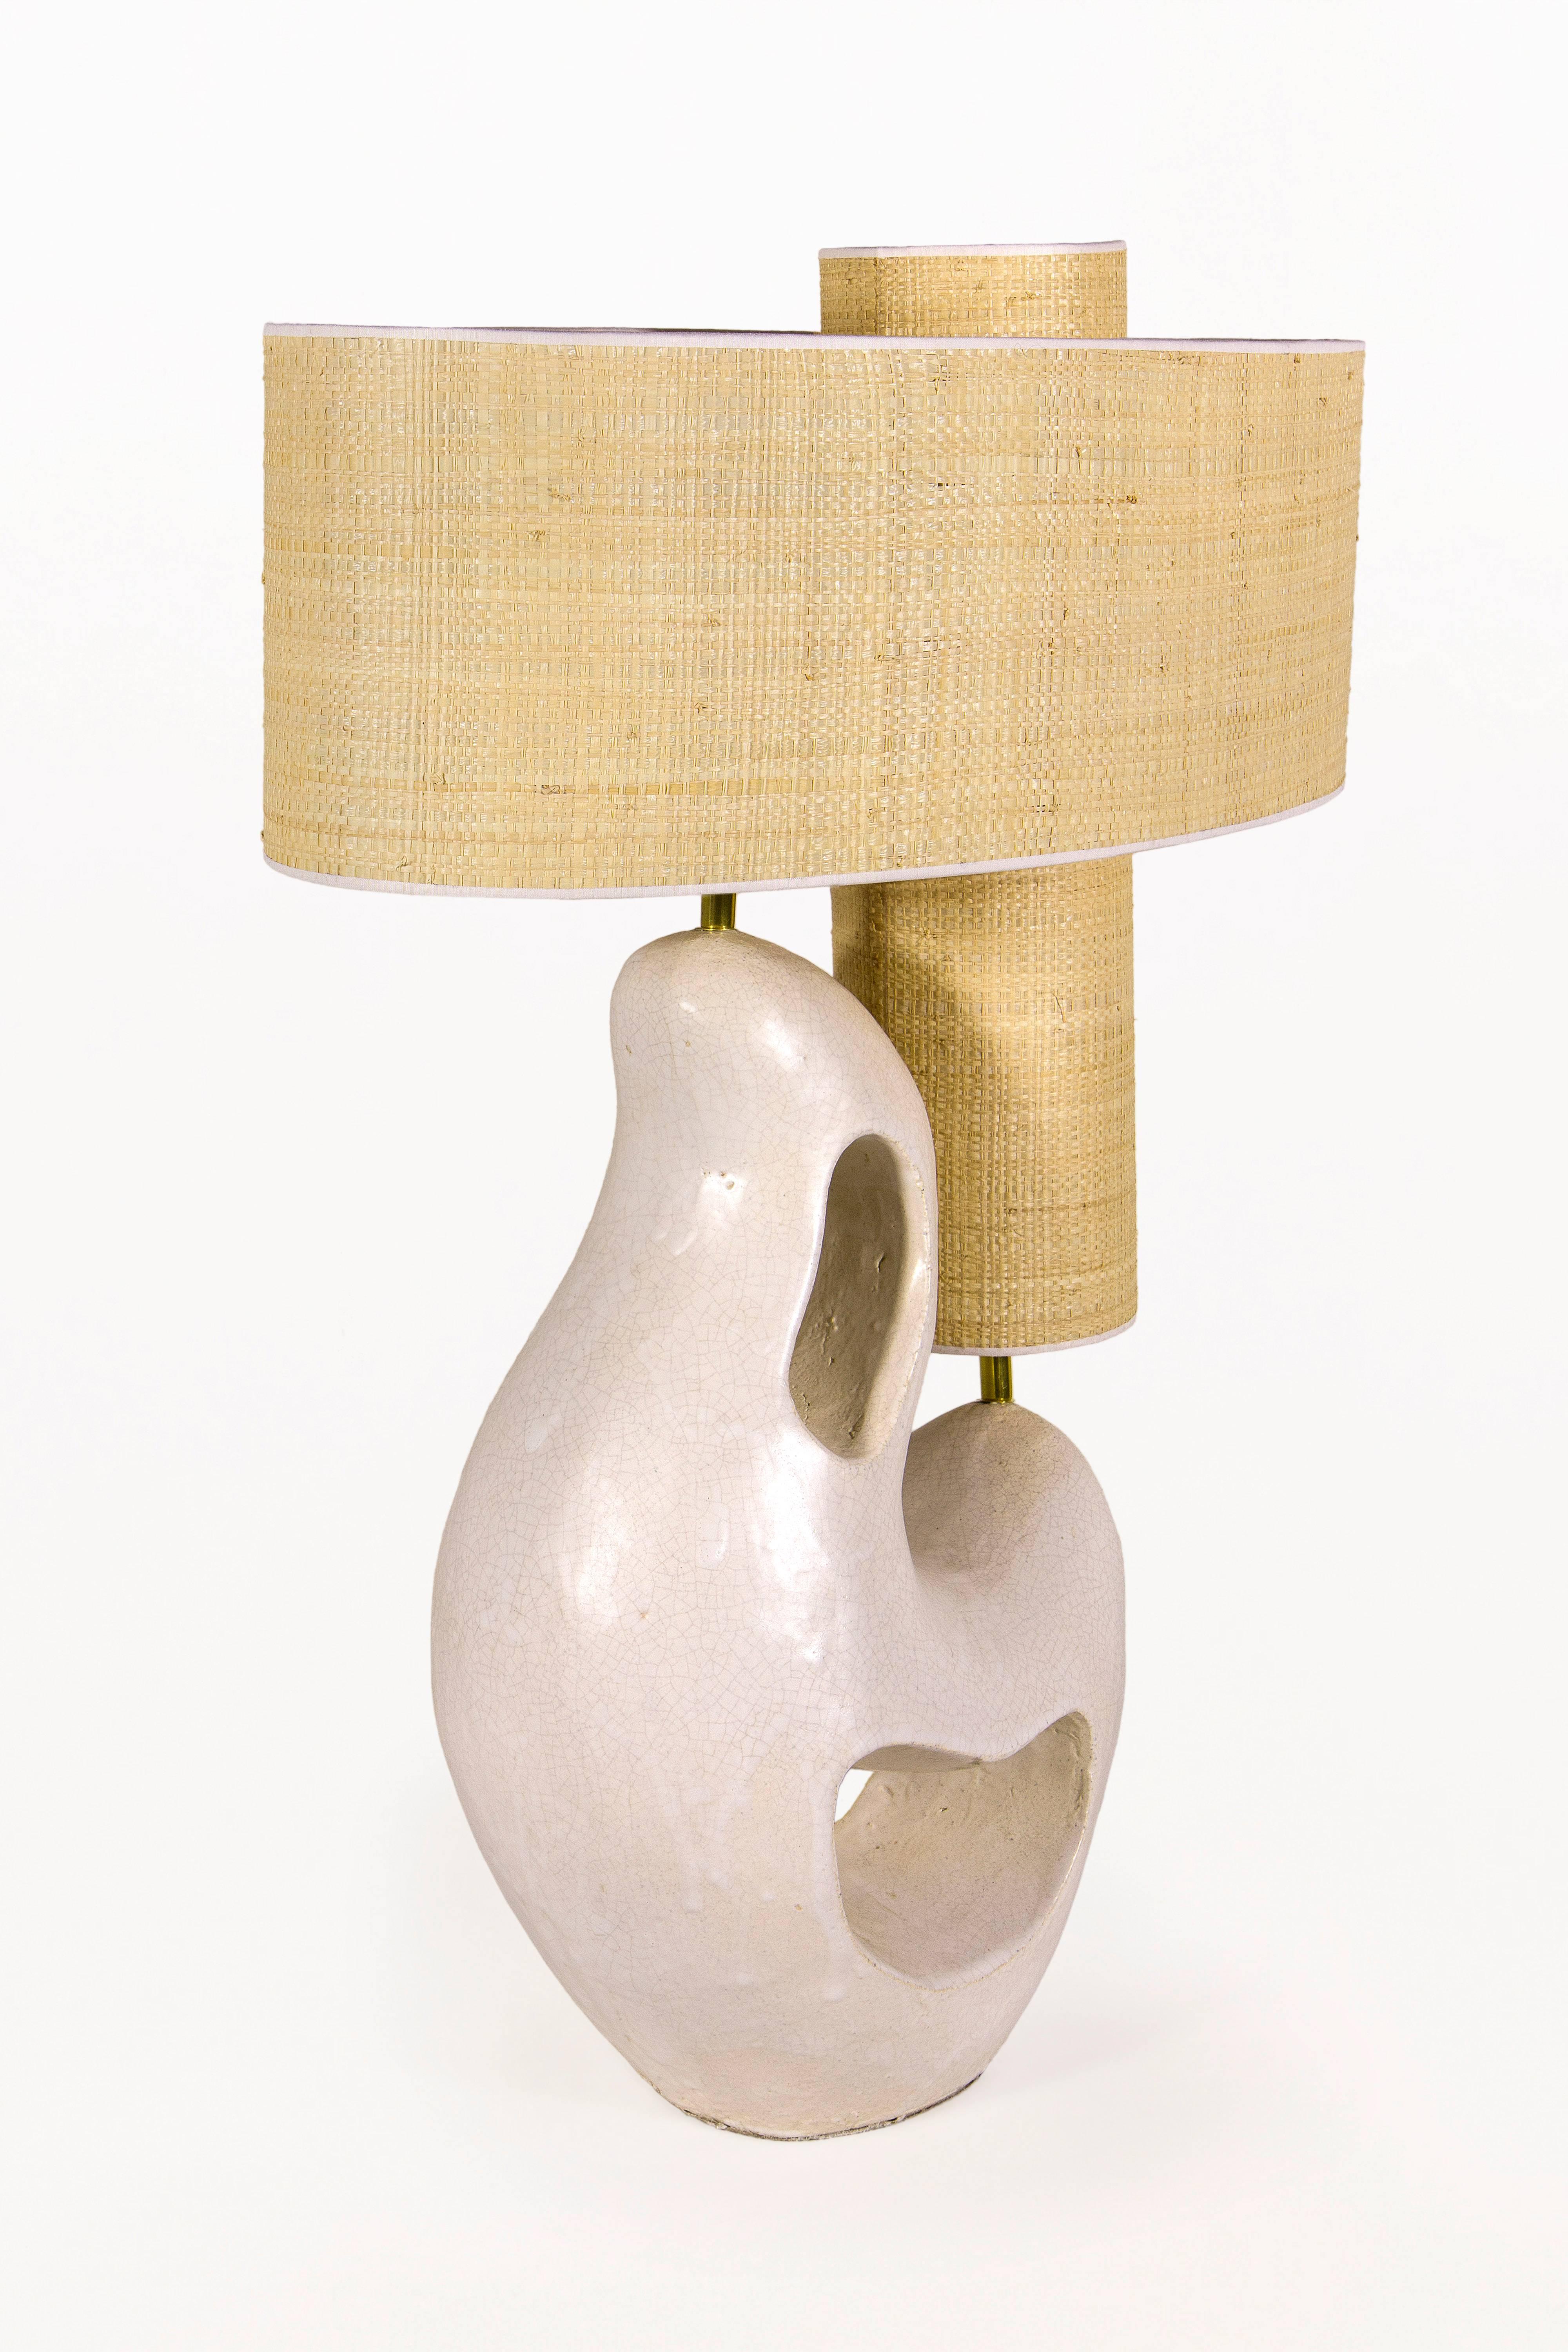 Maïna Gozannet ceramic table lamp 